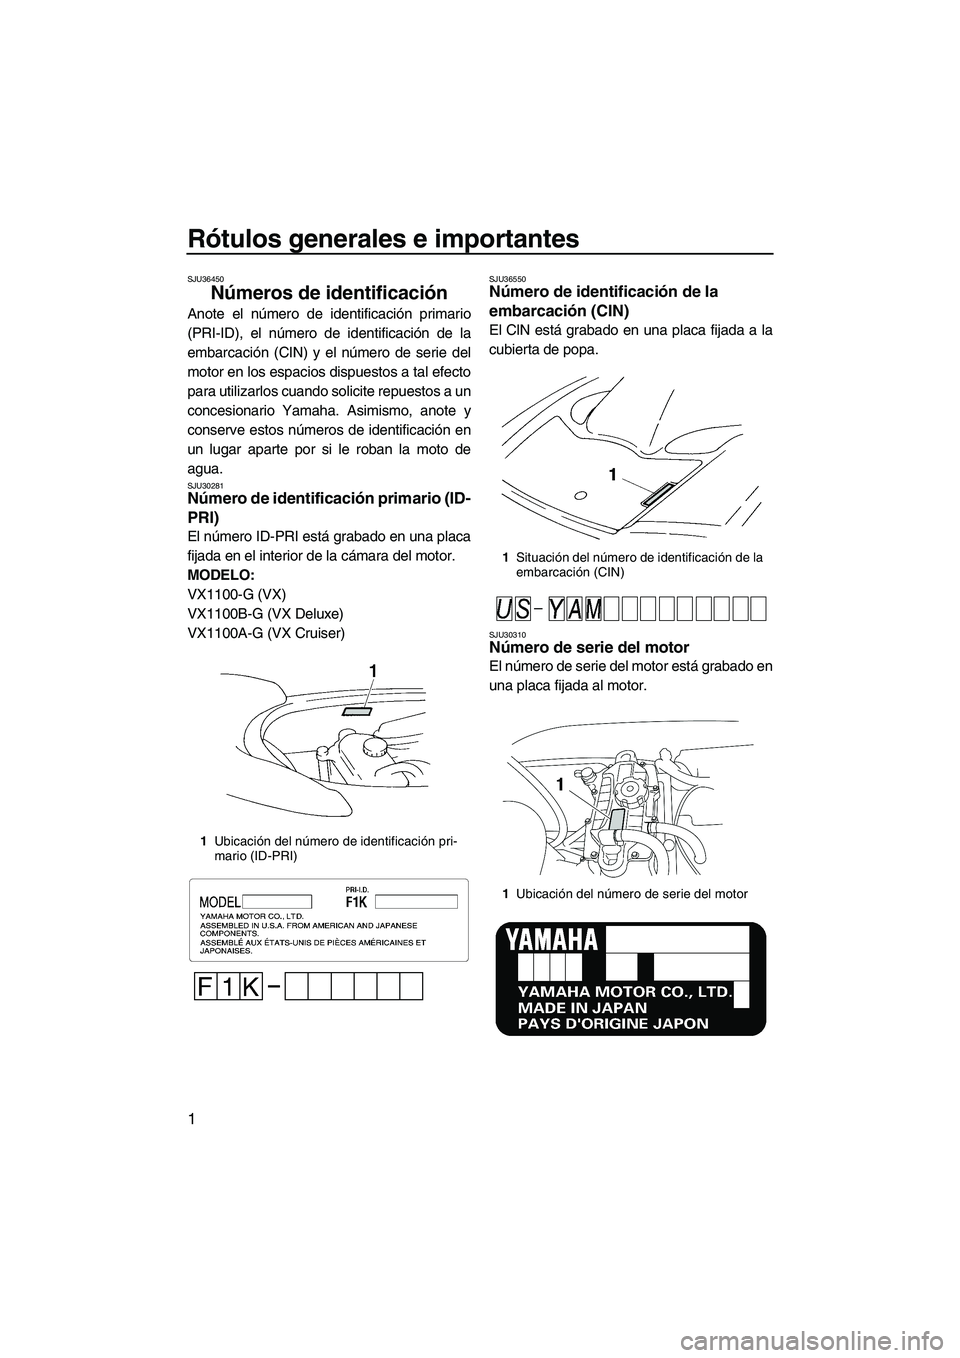 YAMAHA VX SPORT 2008  Manuale de Empleo (in Spanish) Rótulos generales e importantes
1
SJU36450
Números de identificación 
Anote el número de identificación primario
(PRI-ID), el número de identificación de la
embarcación (CIN) y el número de s